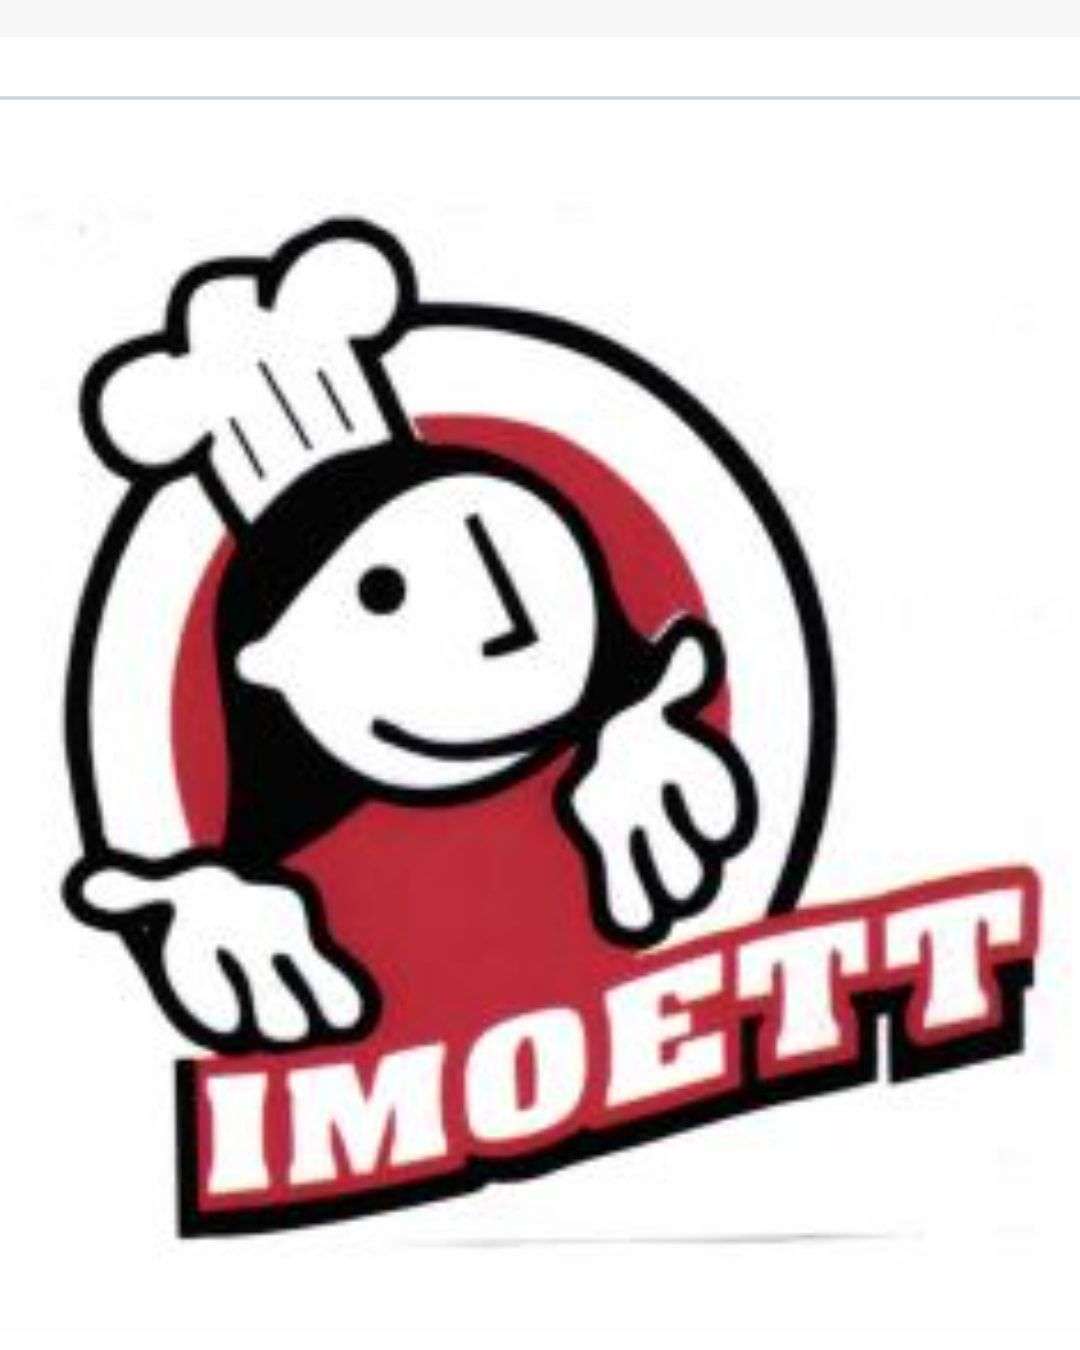 Toko Imoett